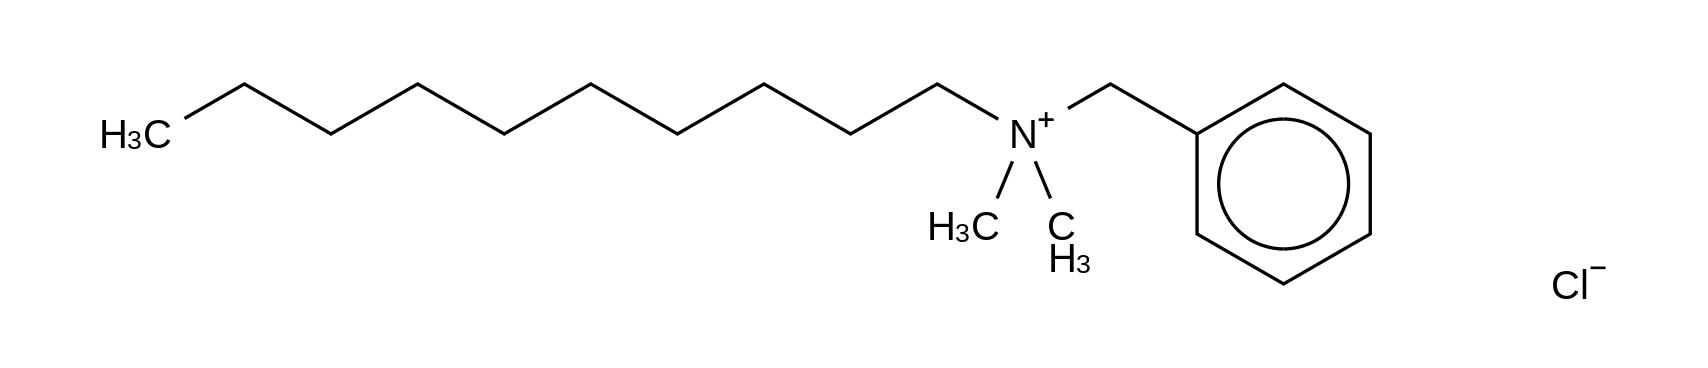 Benzyldecyldimethylammonium Chloride